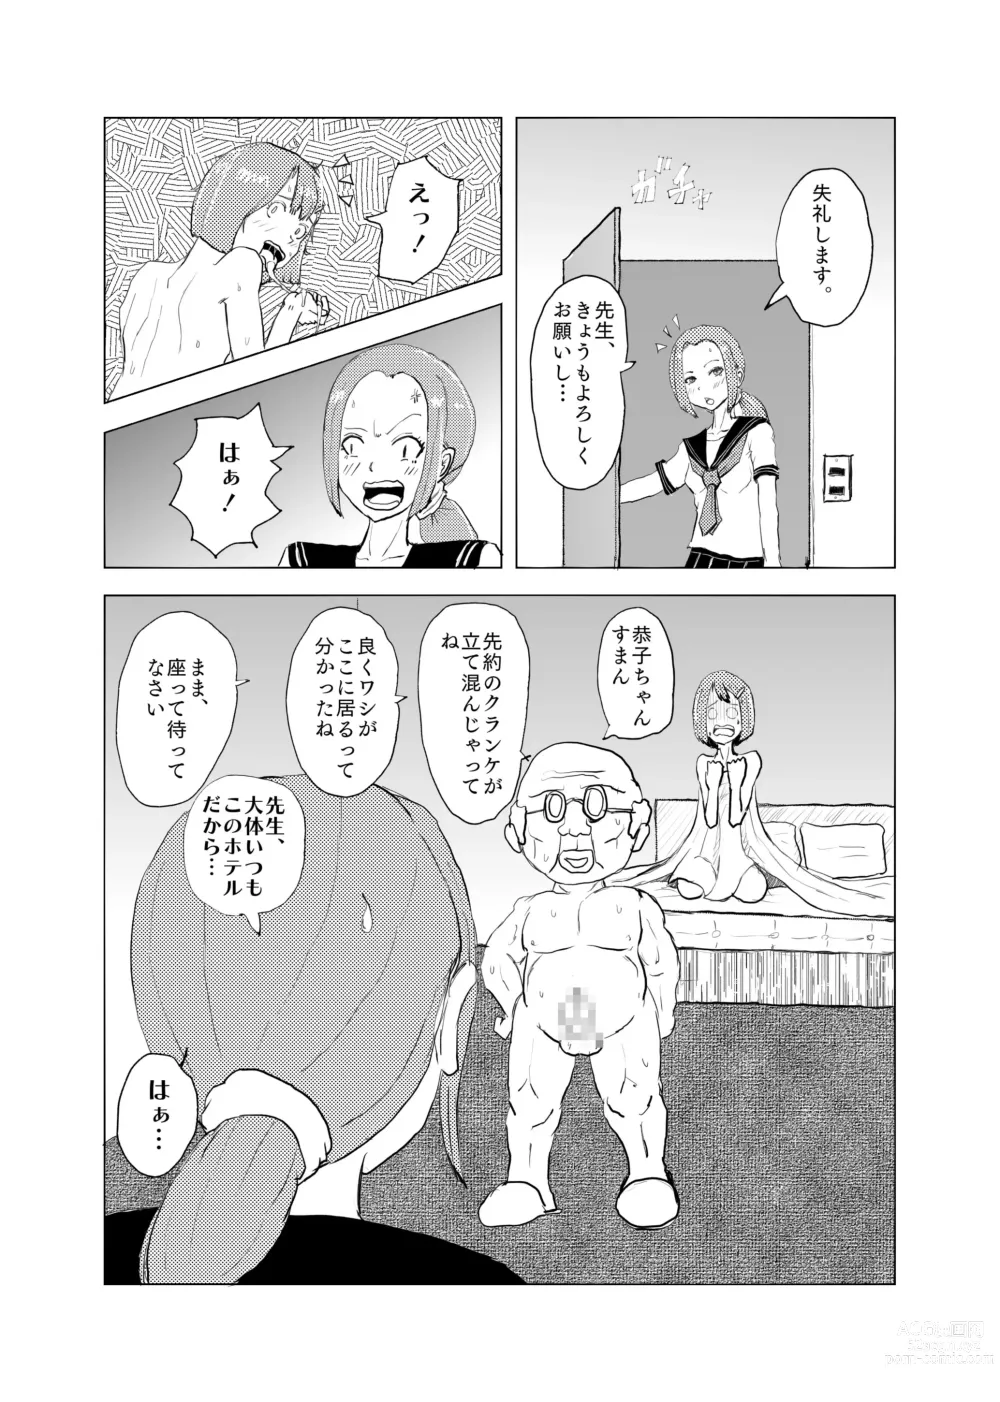 Page 49 of doujinshi Saikyou no Dansei pheromone o Motsu Jijii ga Mesugaki o Kuichirakasu